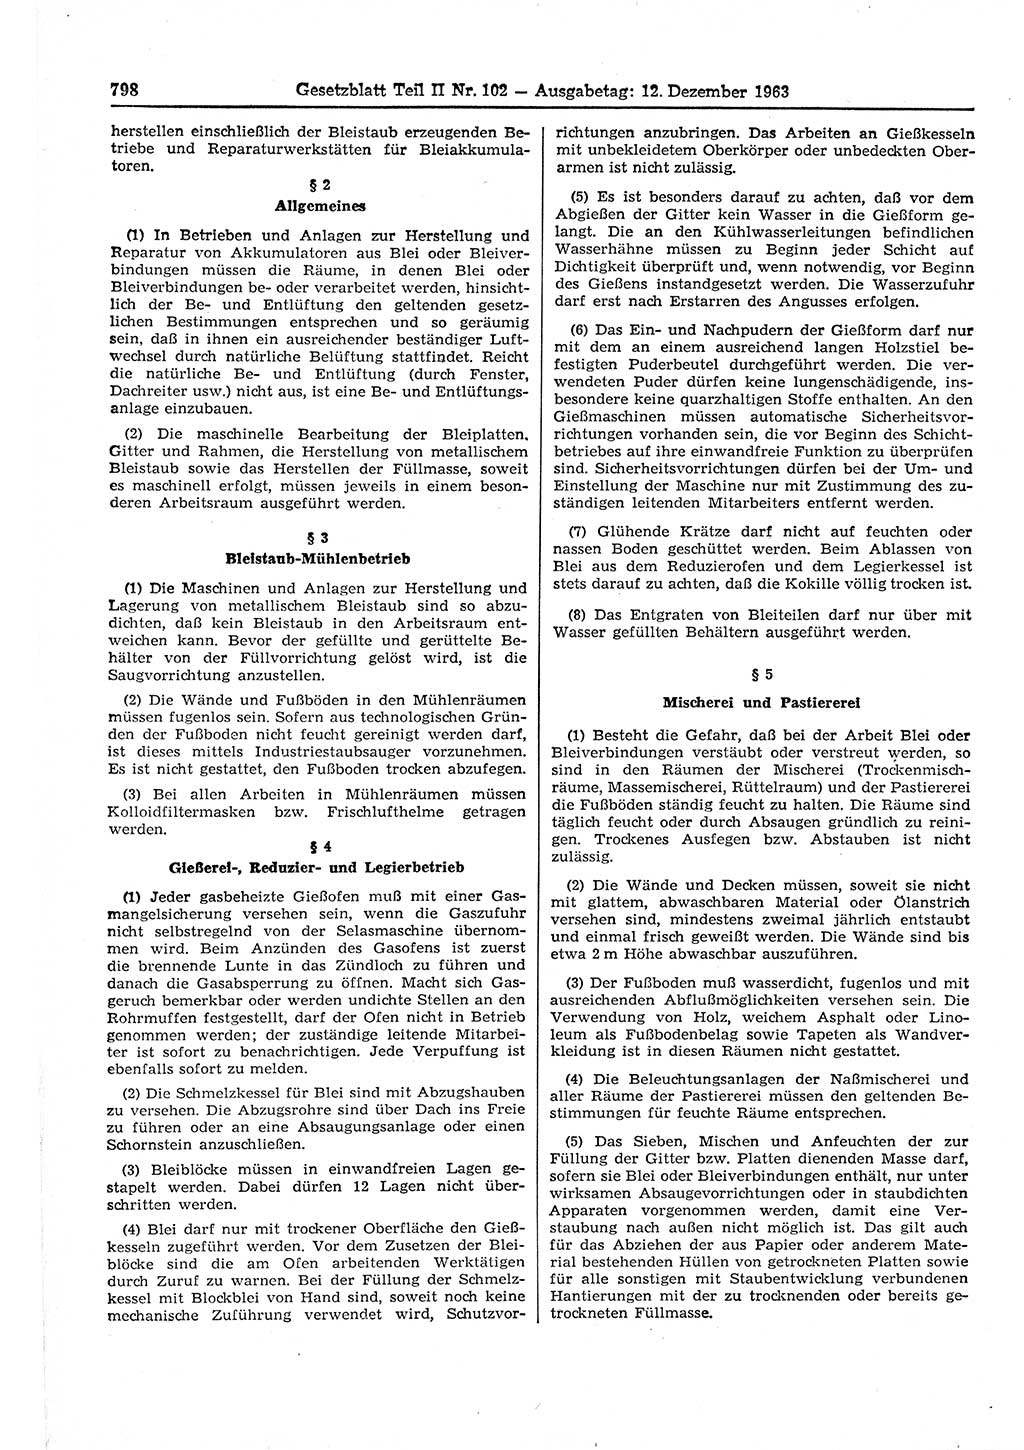 Gesetzblatt (GBl.) der Deutschen Demokratischen Republik (DDR) Teil ⅠⅠ 1963, Seite 798 (GBl. DDR ⅠⅠ 1963, S. 798)